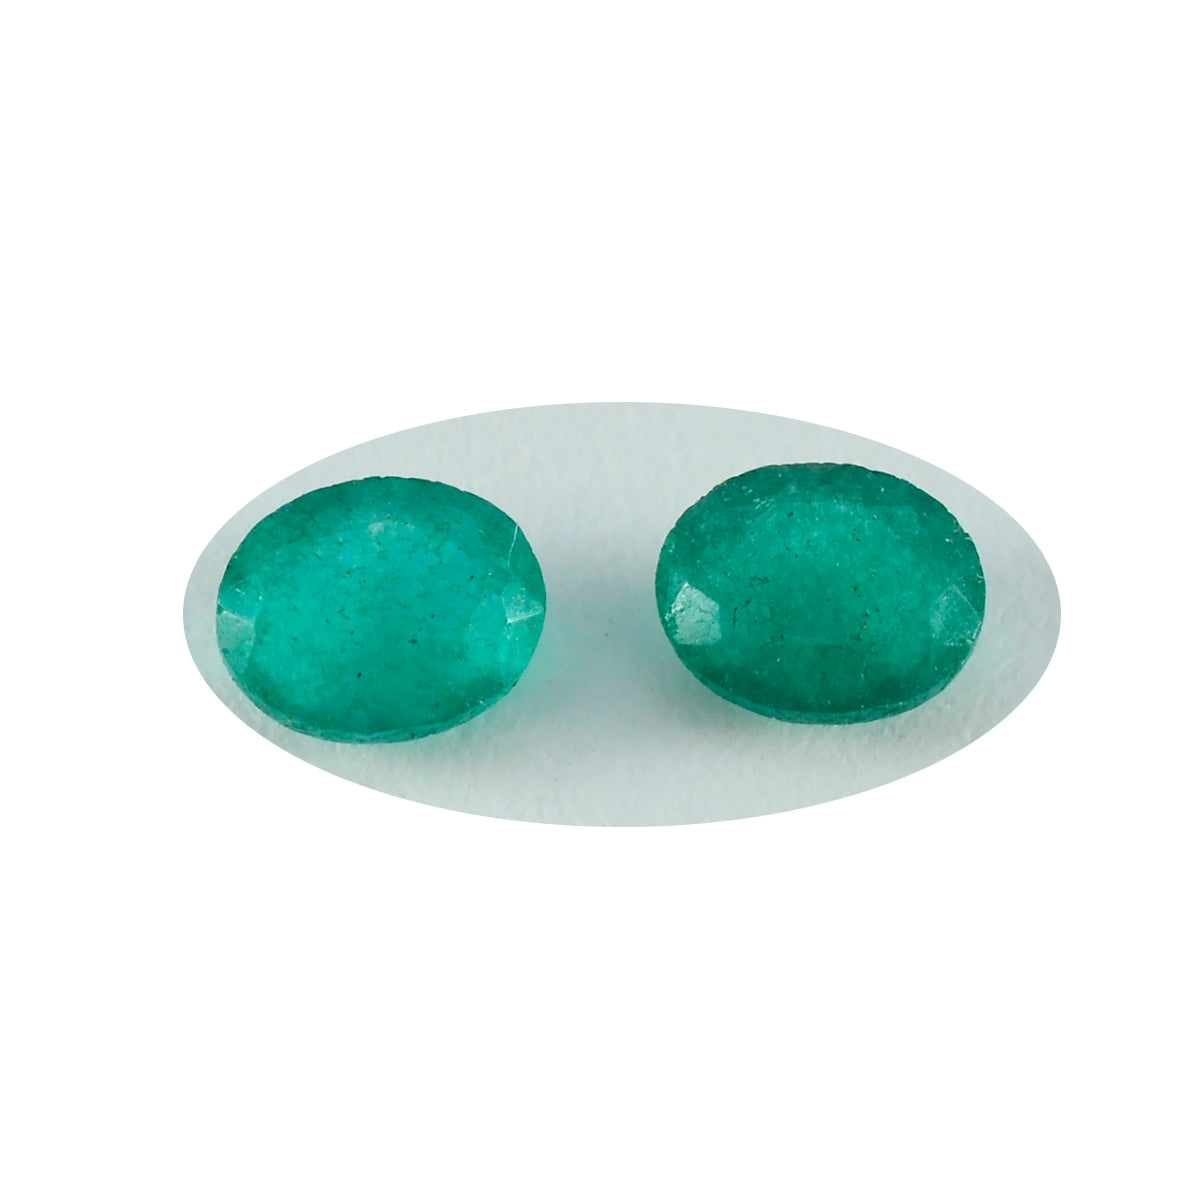 riyogems 1 шт. натуральная зеленая яшма ограненная 9x11 мм овальная форма драгоценный камень прекрасного качества